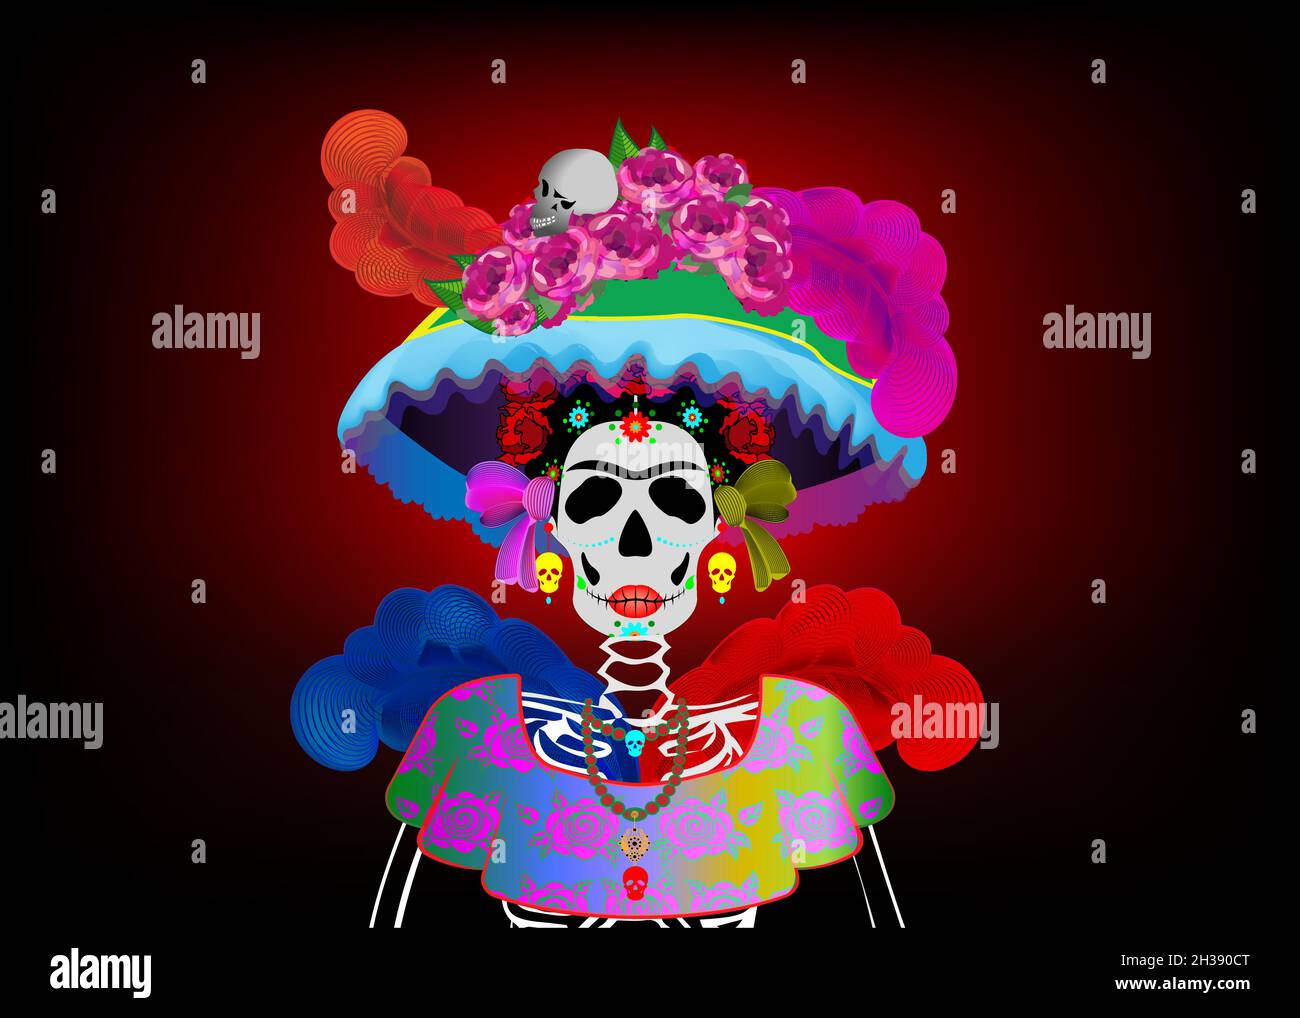 Tag der Toten, Dia de los muertos, Zuckerschädel, mexikanische Fiesta Party, Frau catrina calavera Schädel in Ringelblumen Kranz, Vektor isoalted auf da Stock Vektor